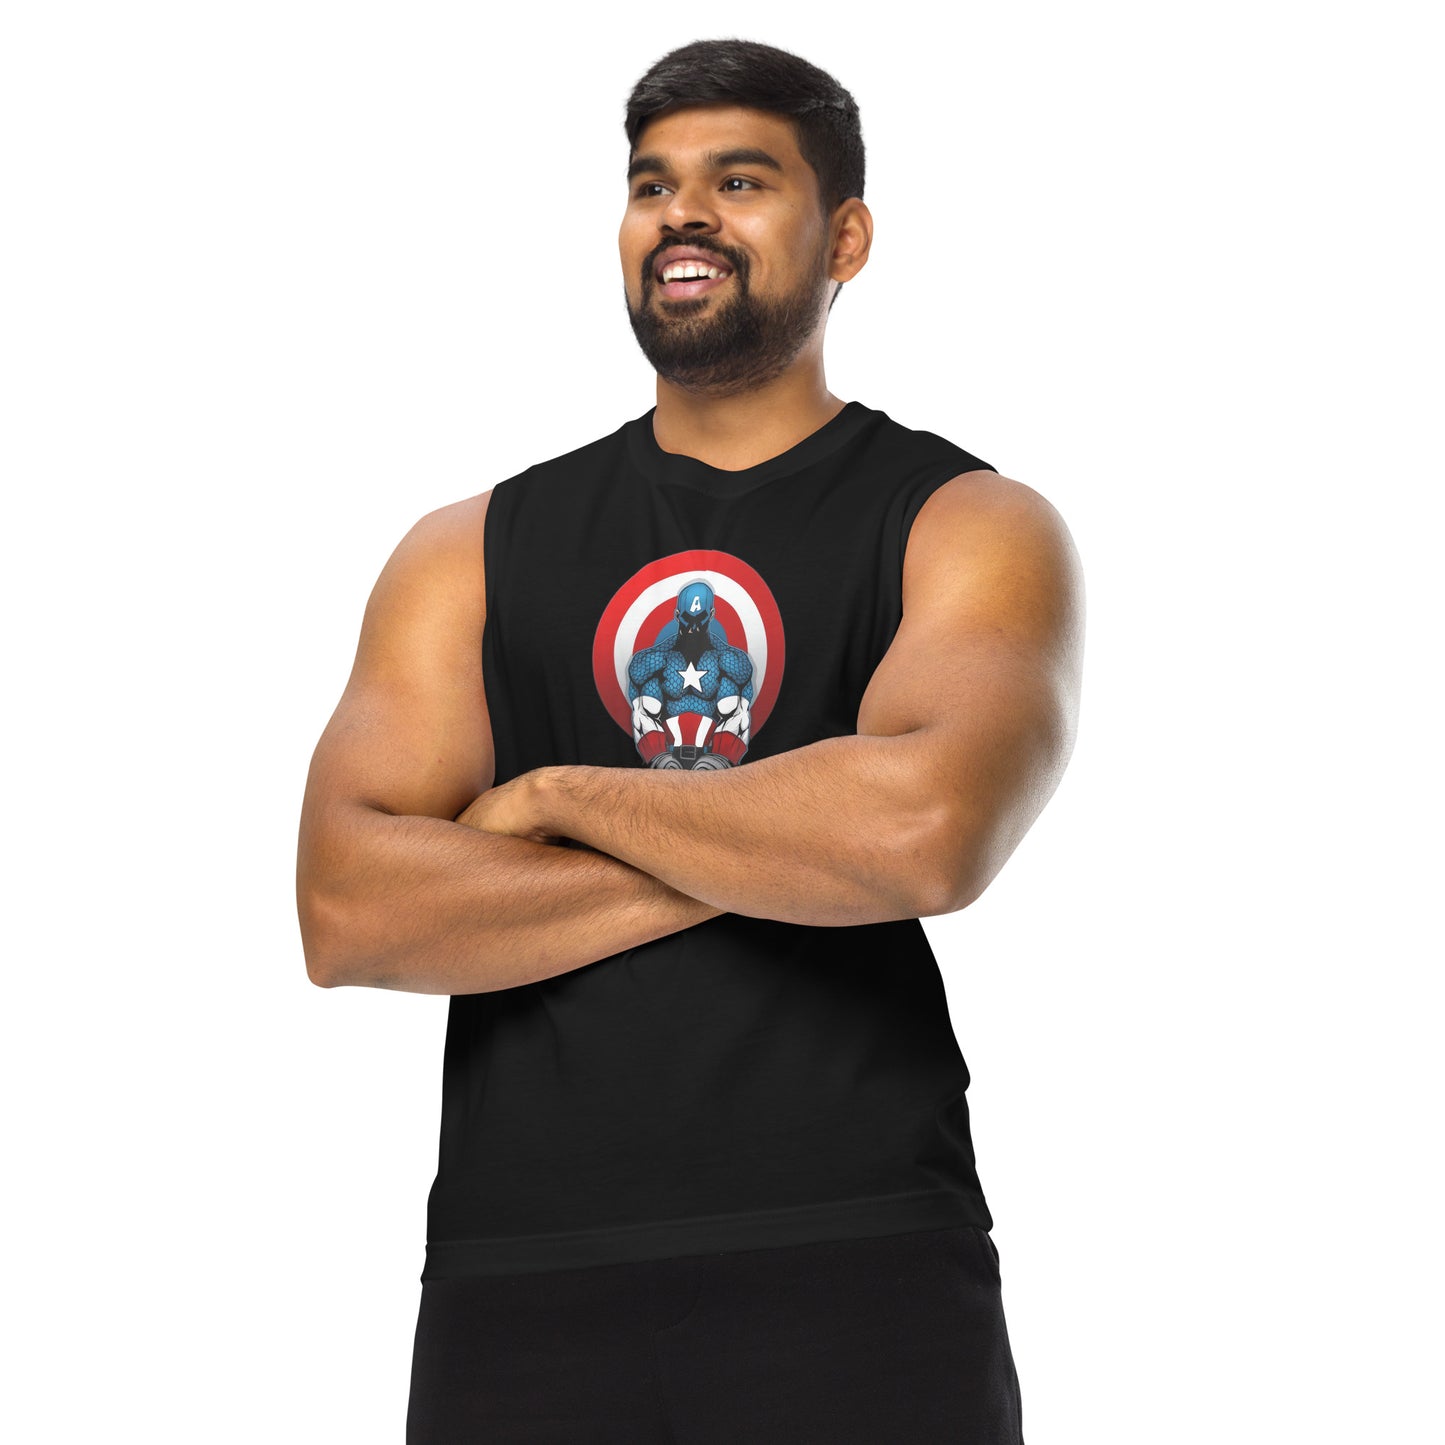 Camiseta sin mangas perfecta para entrenar, Camiseta Capts Gym comprala en línea y experimenta el mejor servicio al cliente. envíos internacionales.